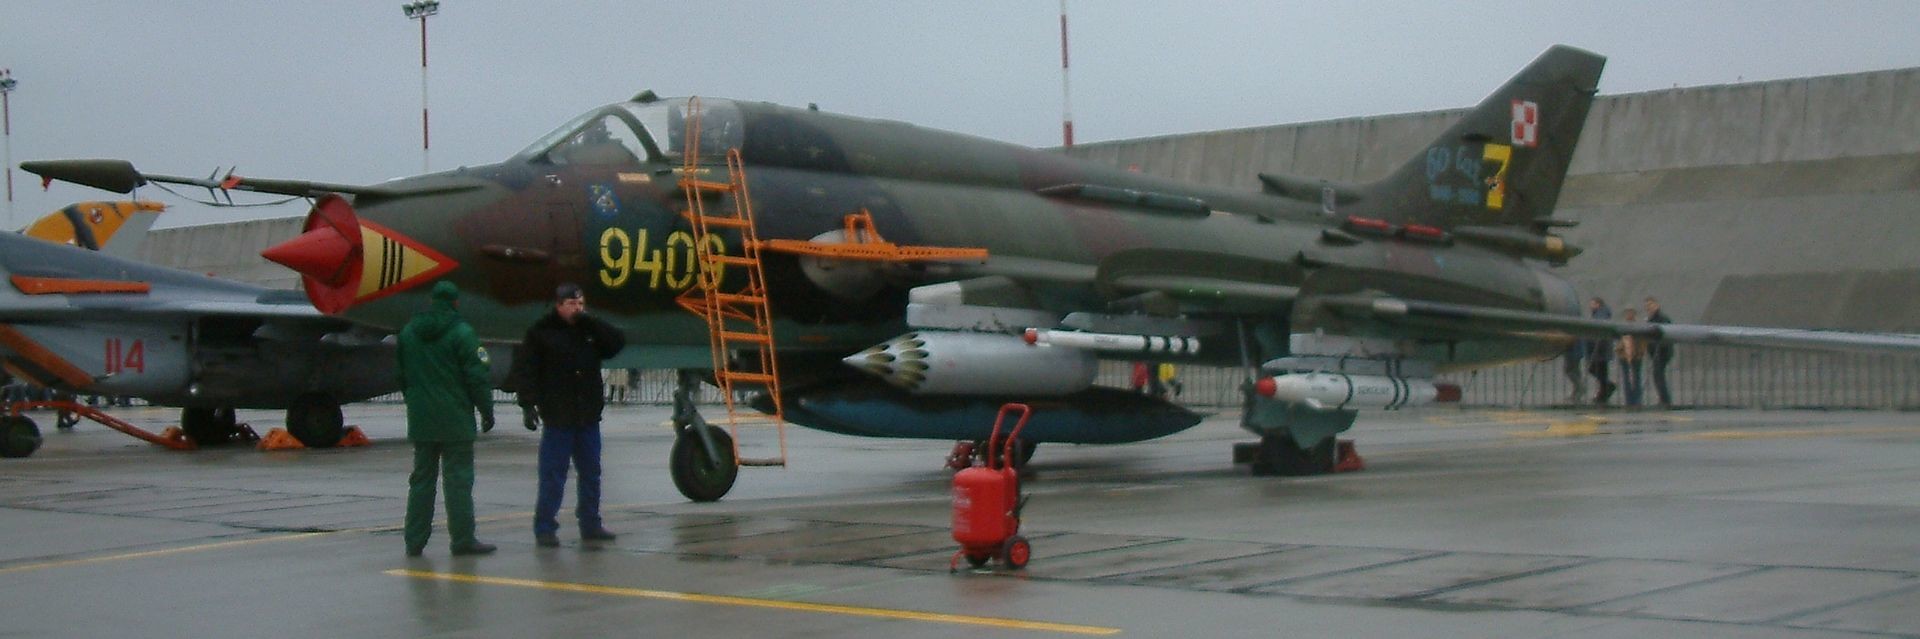 Poljski Su-22, letalska baza Krzesiny